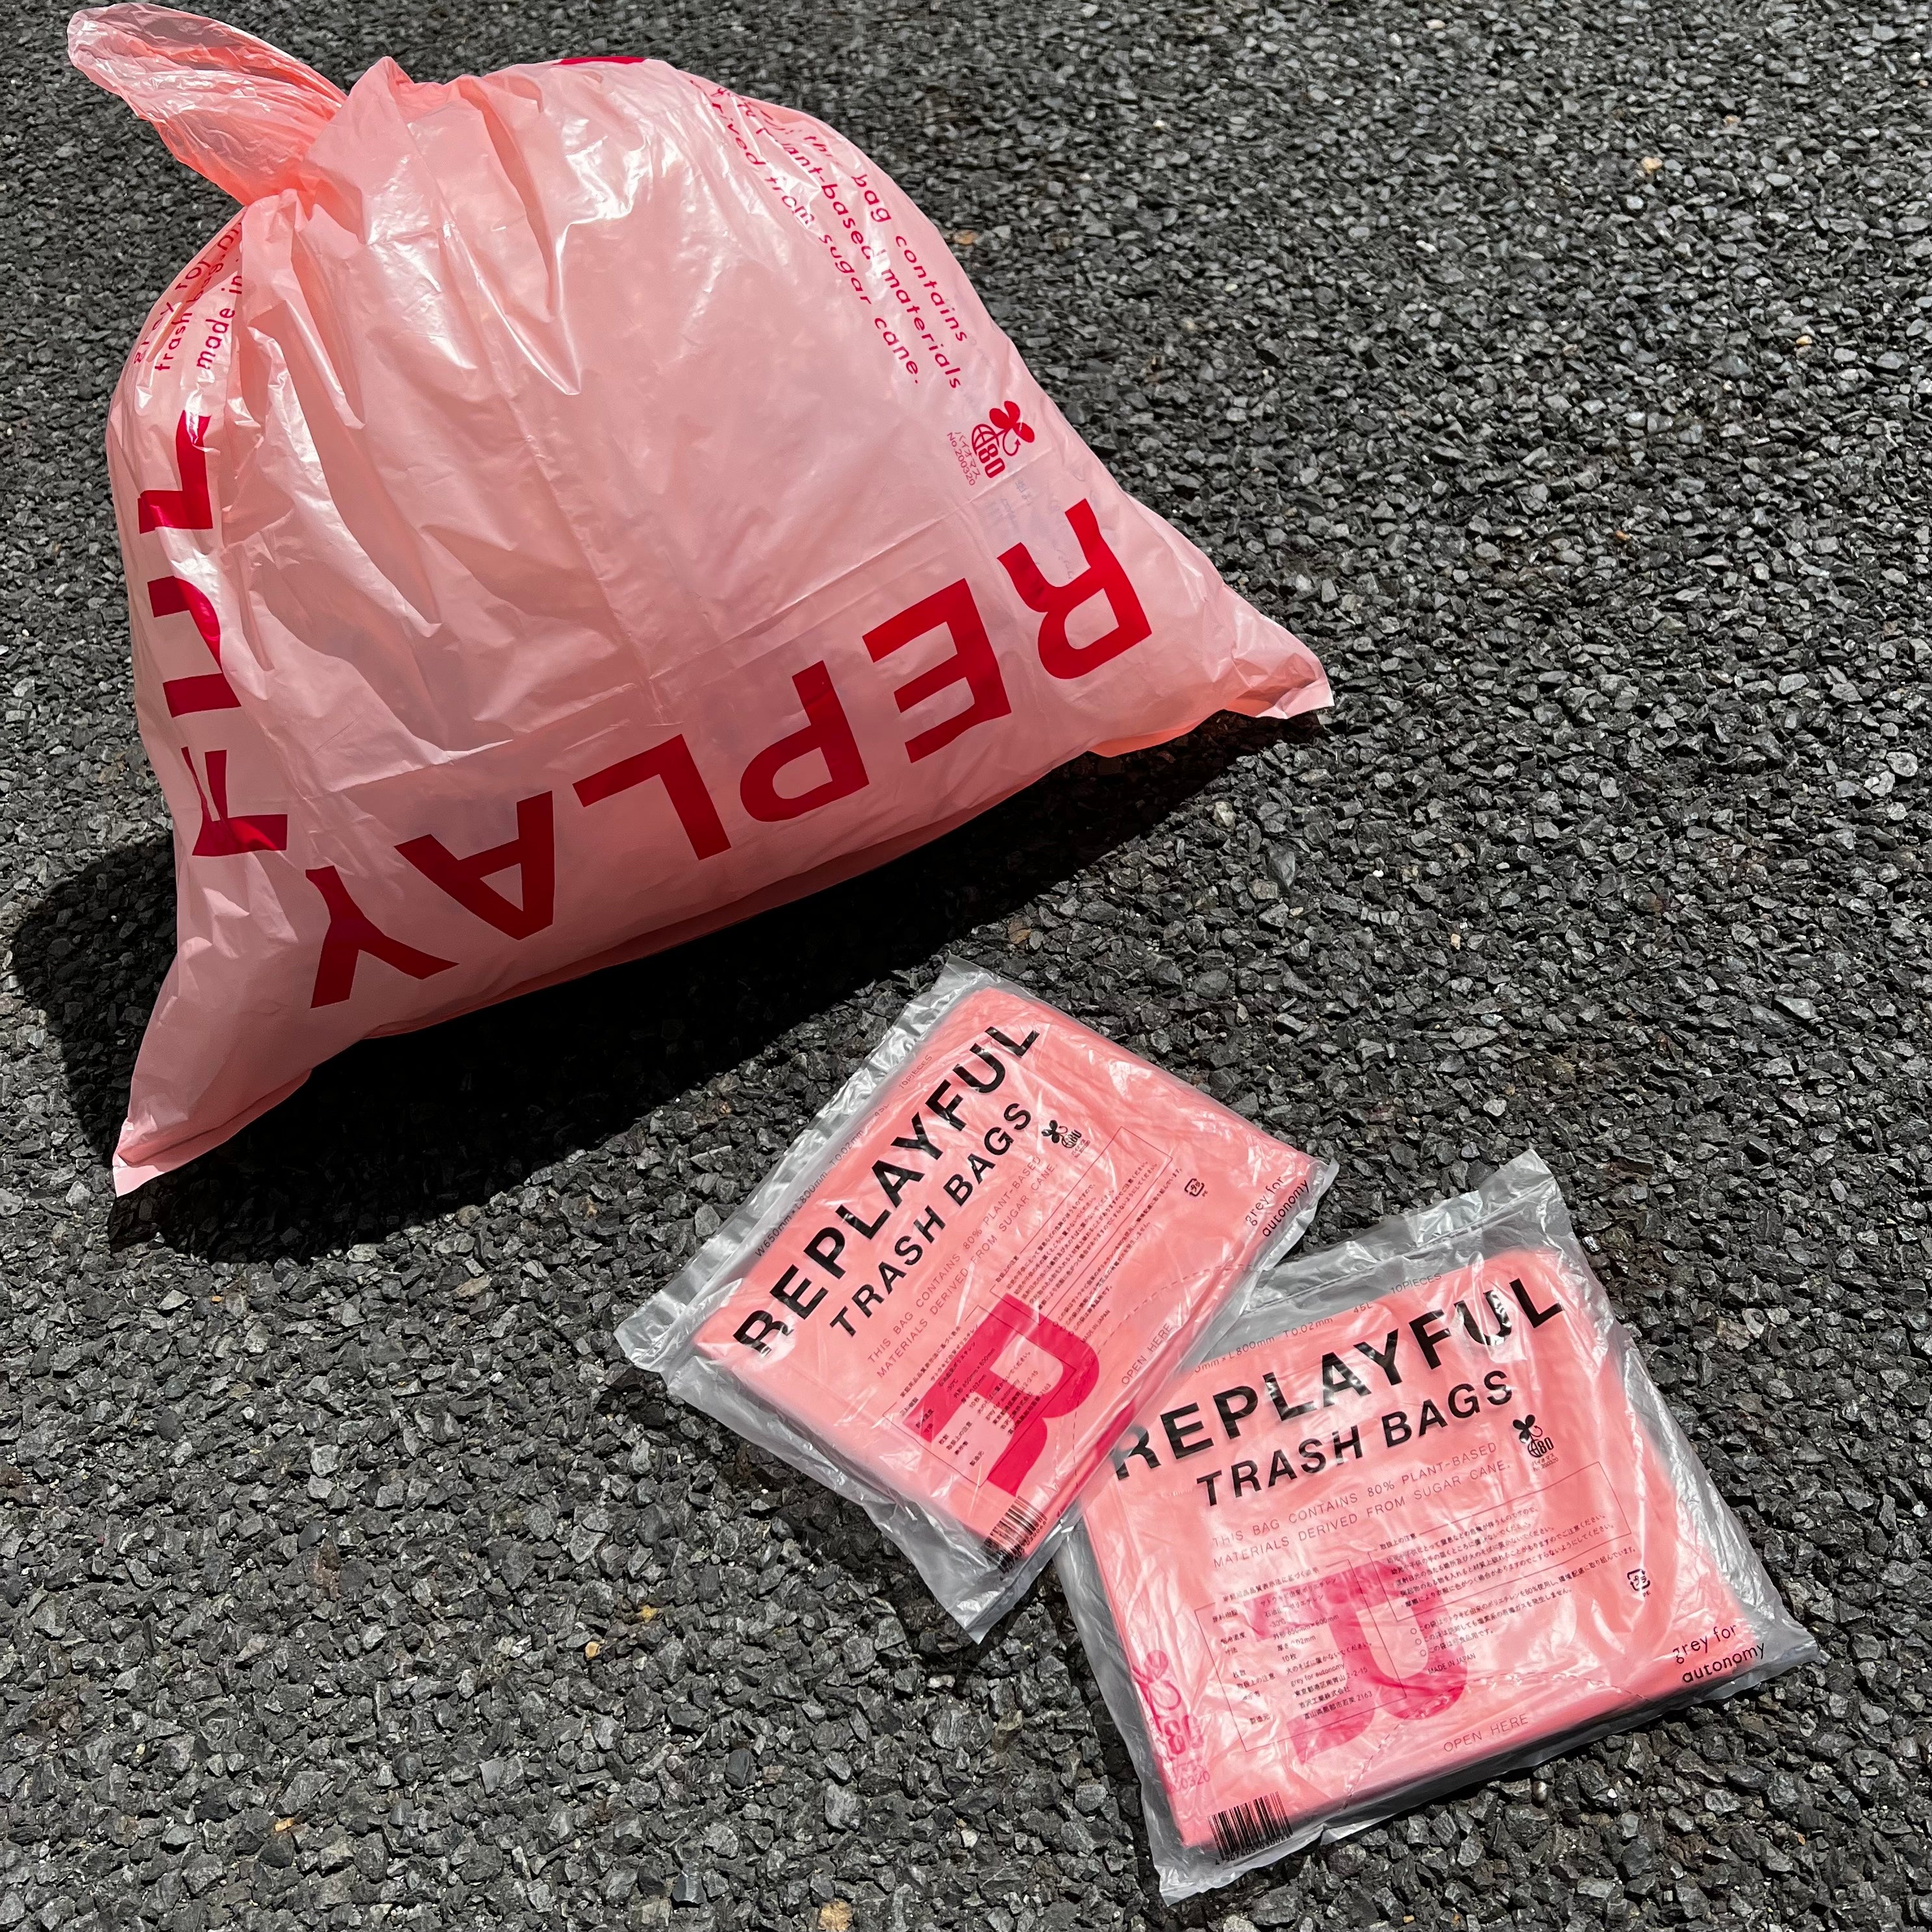 Replayful Trash Bags /リプレイフル トラッシュ バッグス 20袋セット